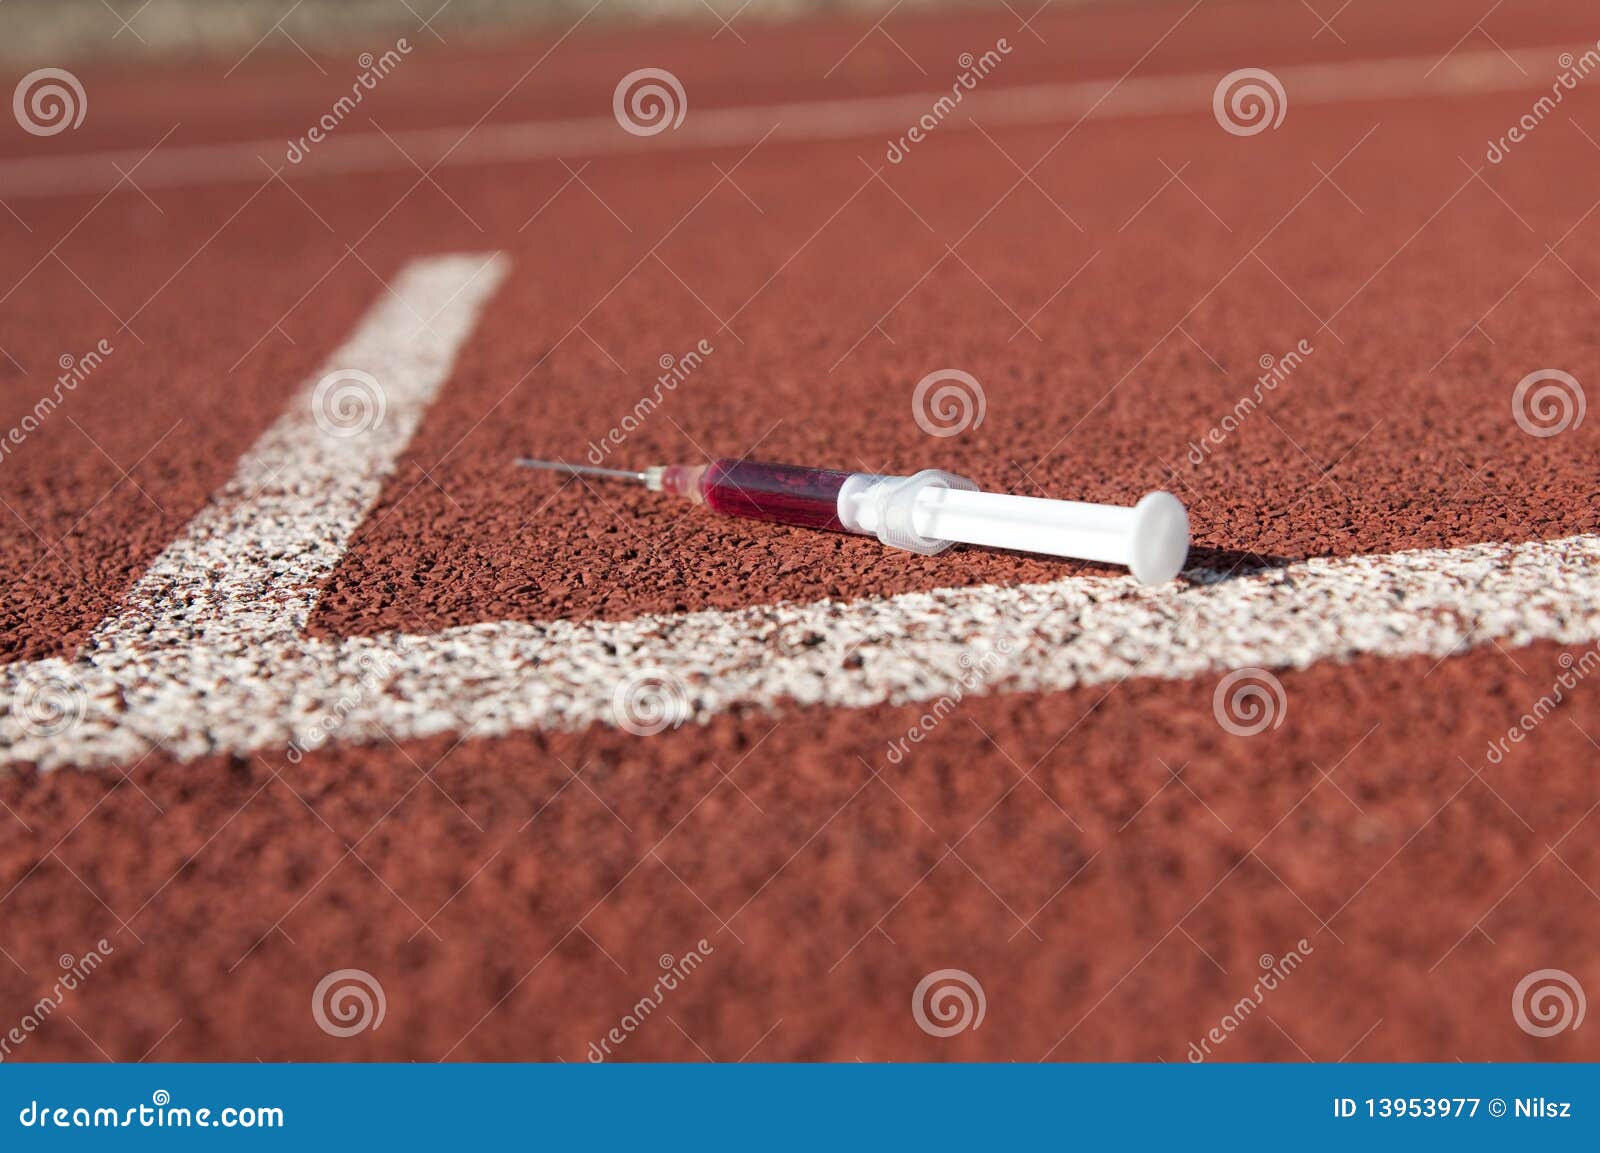 doping syringe on athletics sports area